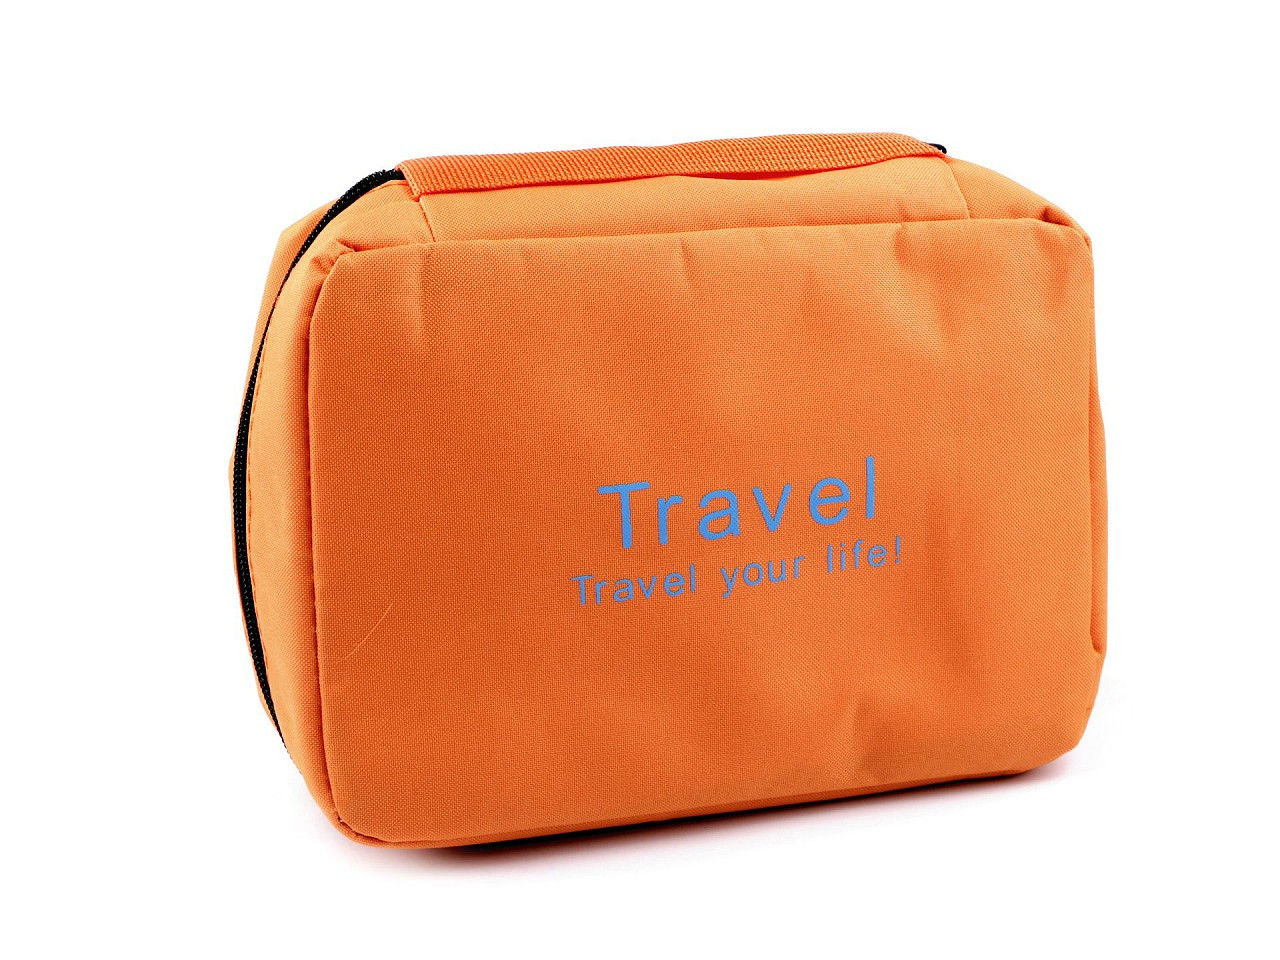 Kosmetická taška / závěsný organizér 16x22 cm, barva 1 oranžová